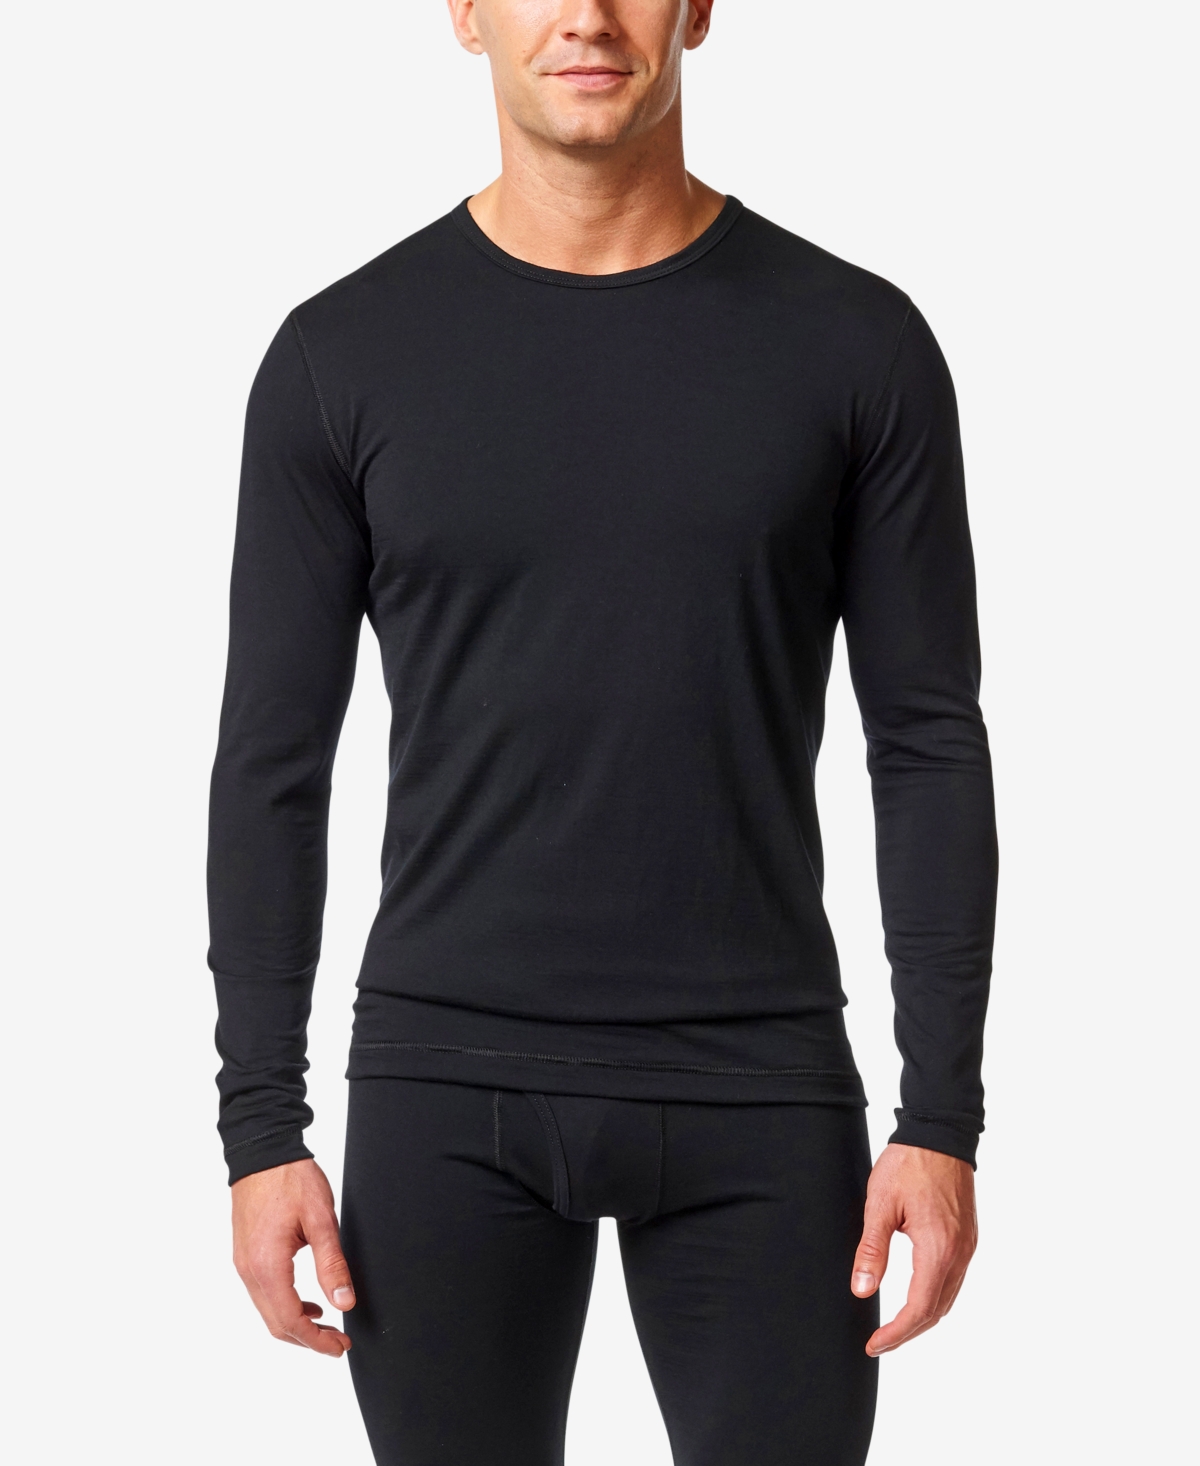 Men's Pure Merino Wool Base Layer Undershirt - Black